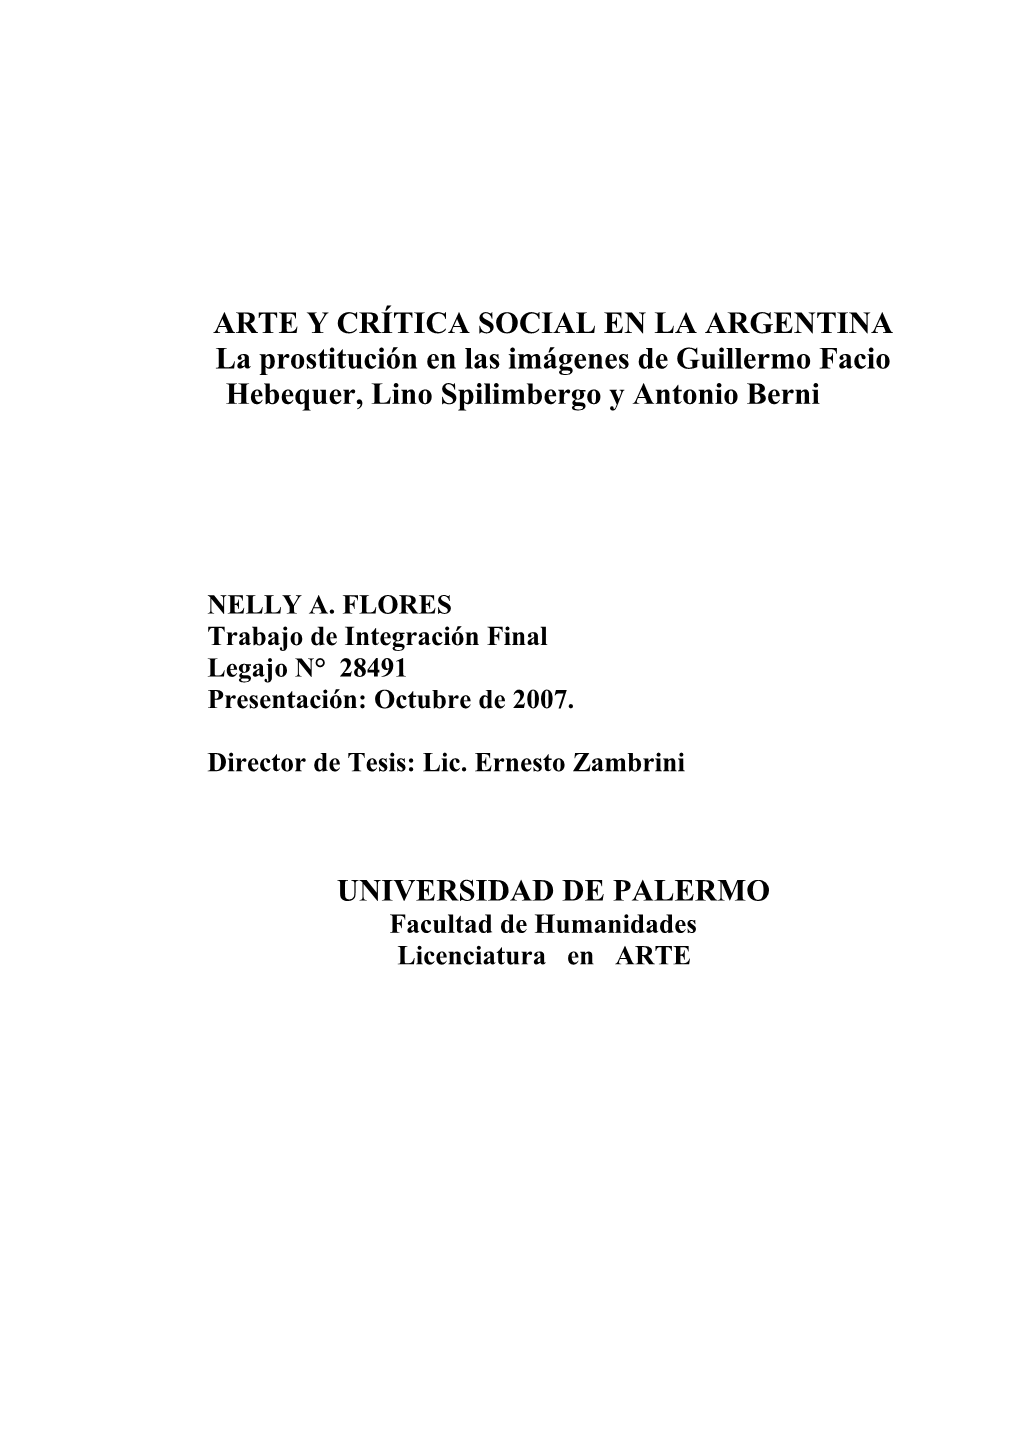 ARTE Y CRÍTICA SOCIAL EN LA ARGENTINA La Prostitución En Las Imágenes De Guillermo Facio Hebequer, Lino Spilimbergo Y Antonio Berni